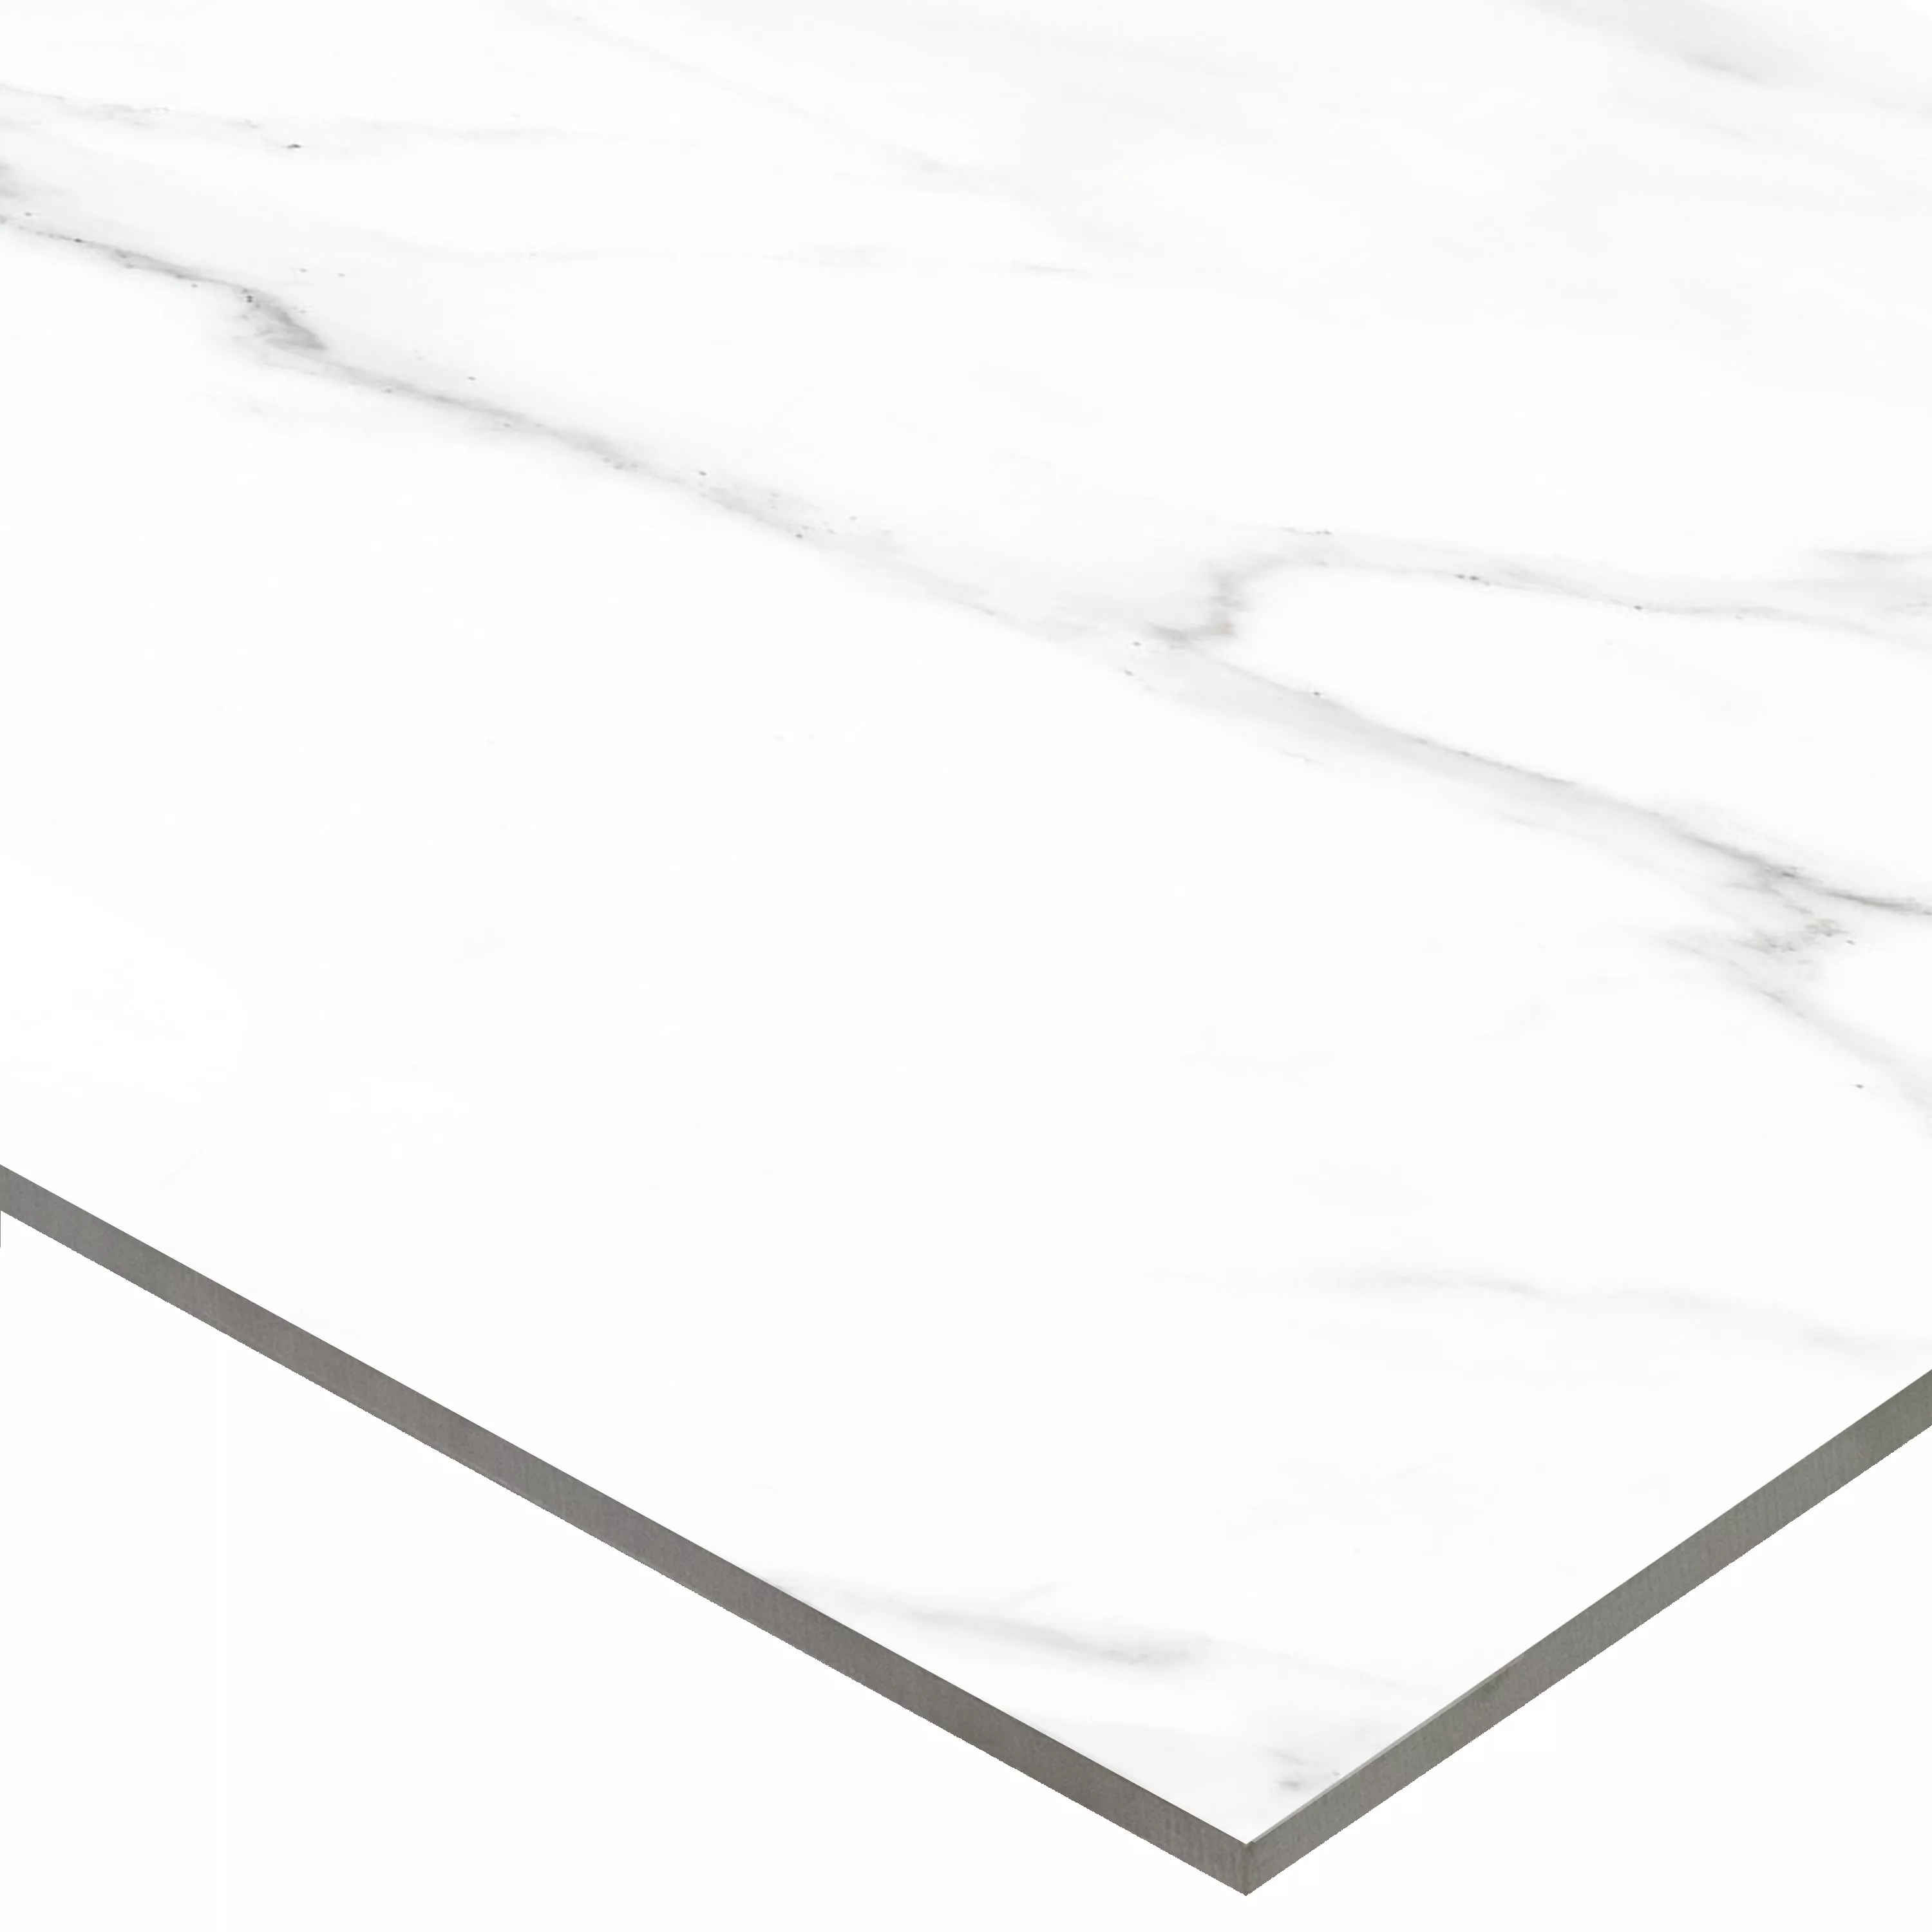 Πλακάκια Δαπέδου Arcadia Μαρμάρινη Όψη Αμεμπτος Ασπρο 60x120cm